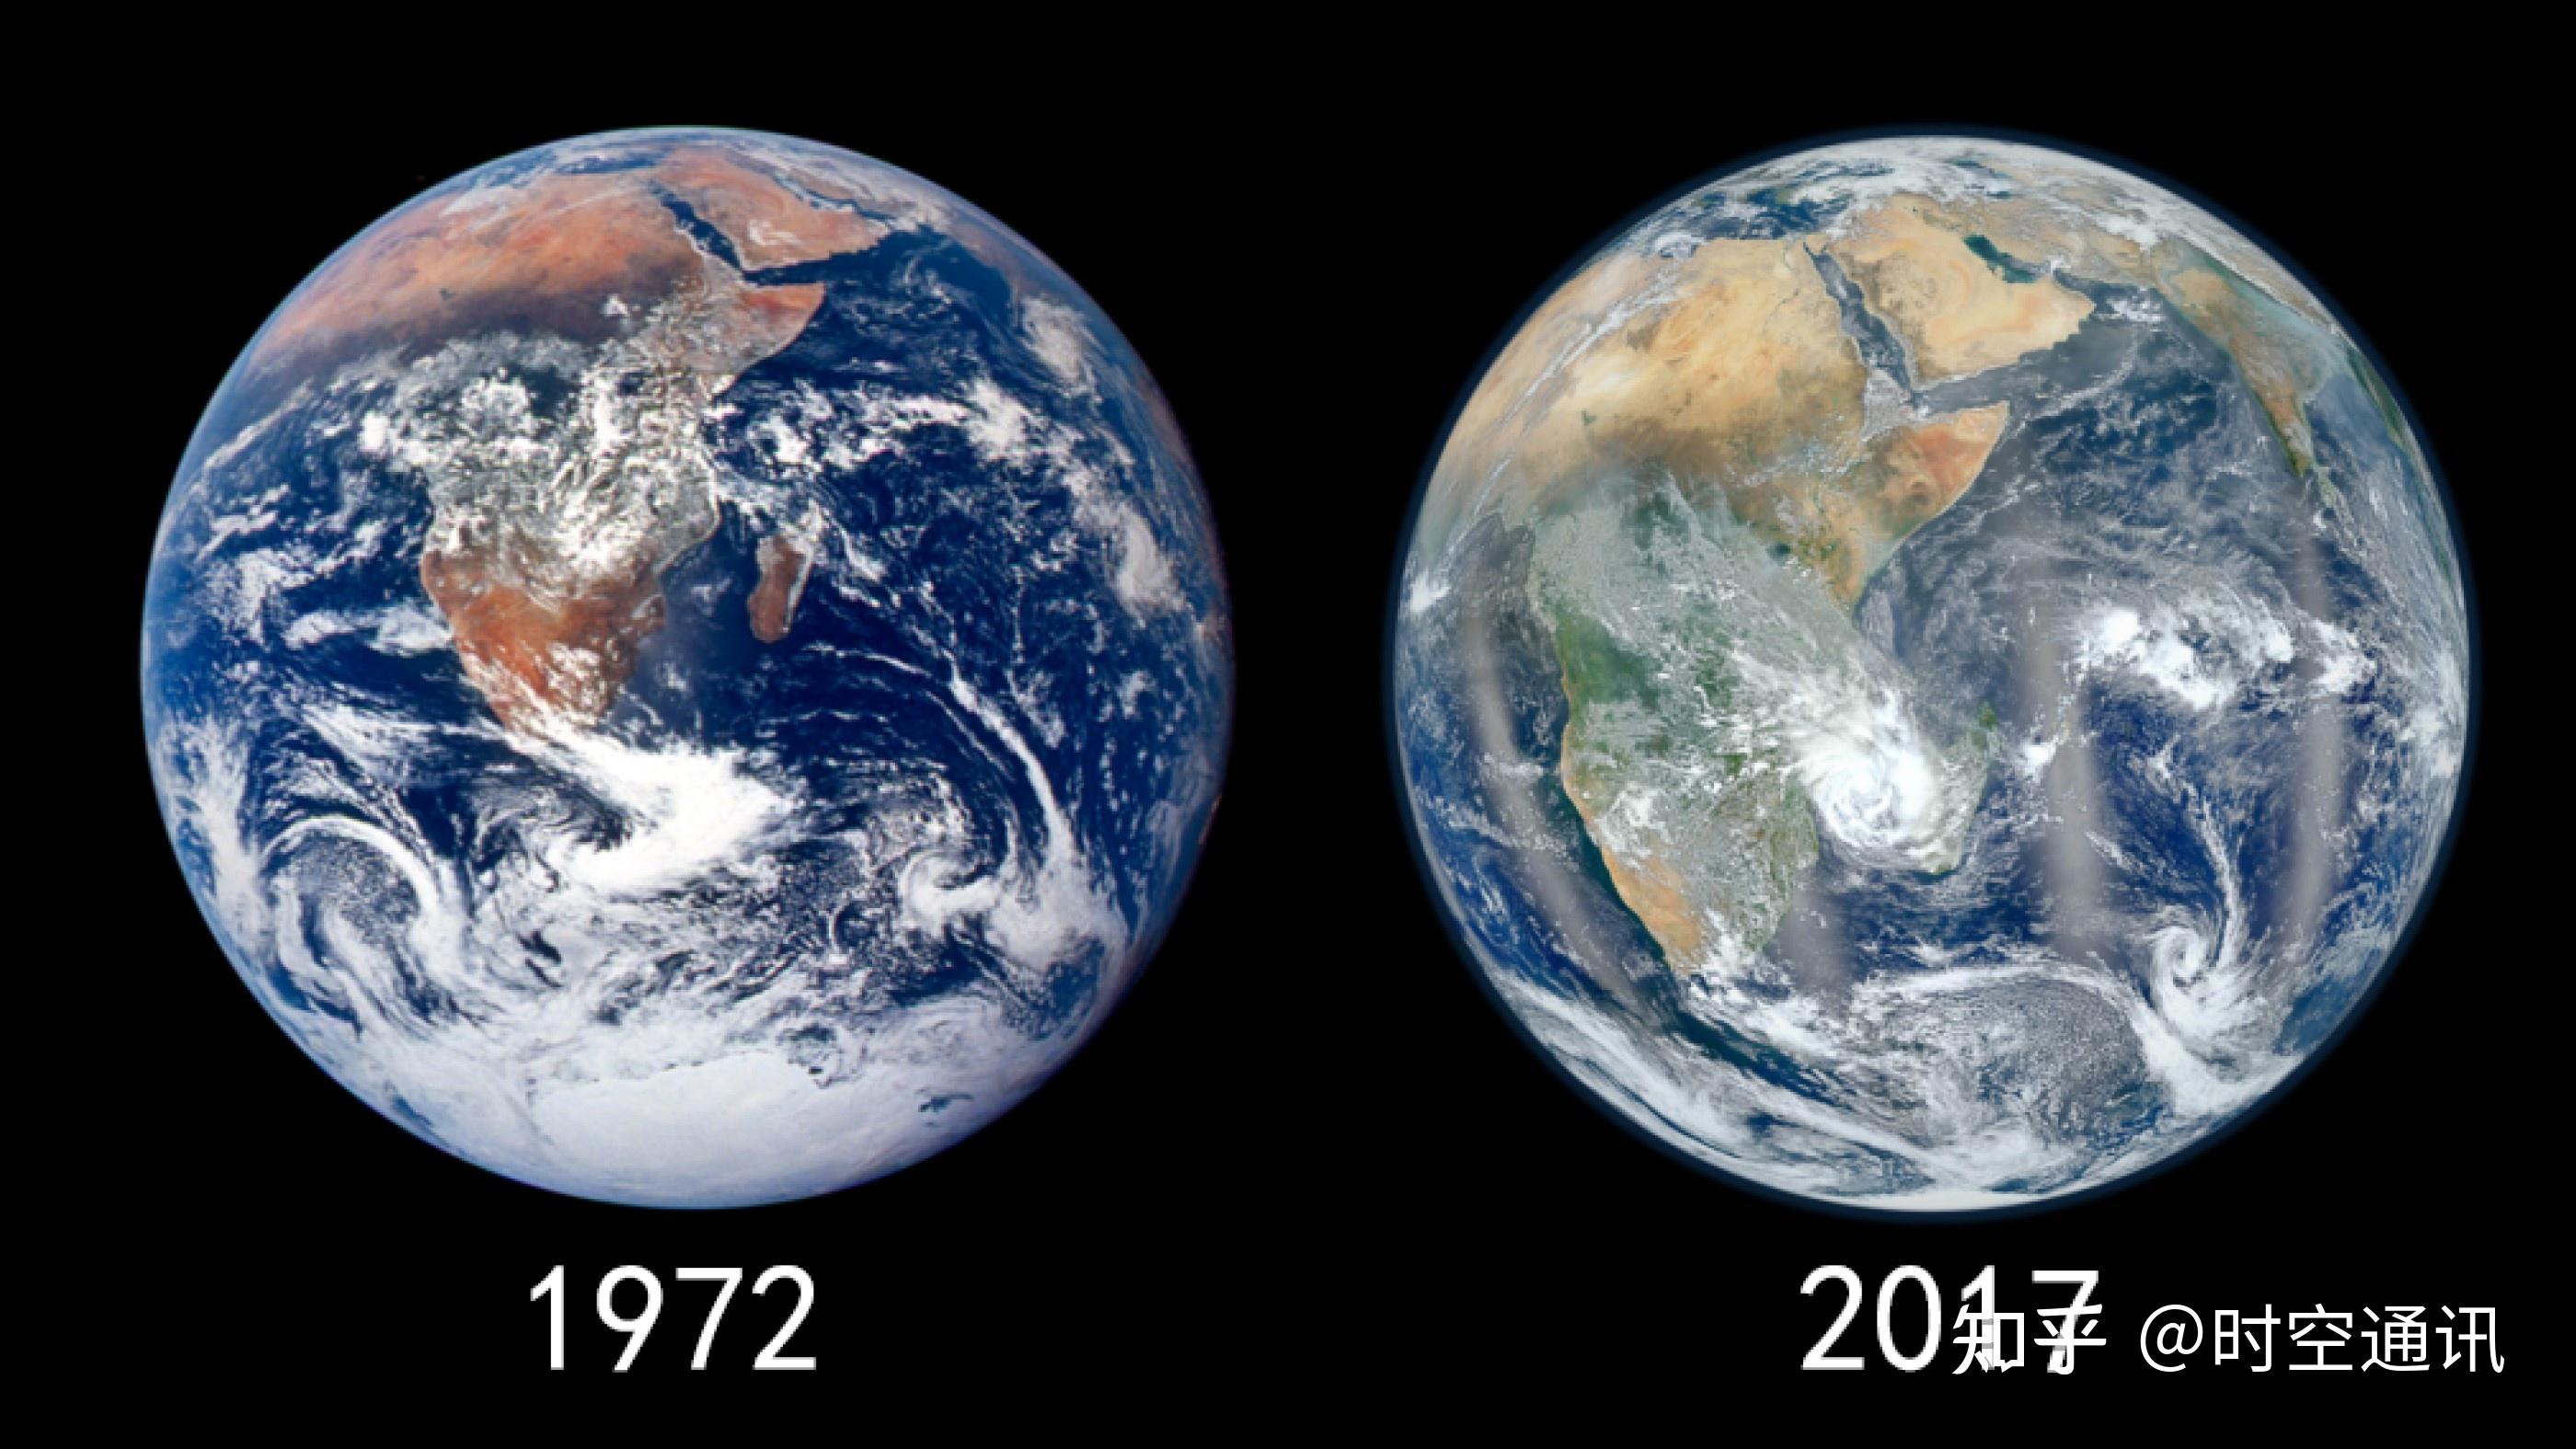 所谓下面这张nasa公布的1972年和2017年地球对比的照片,我严重怀疑其